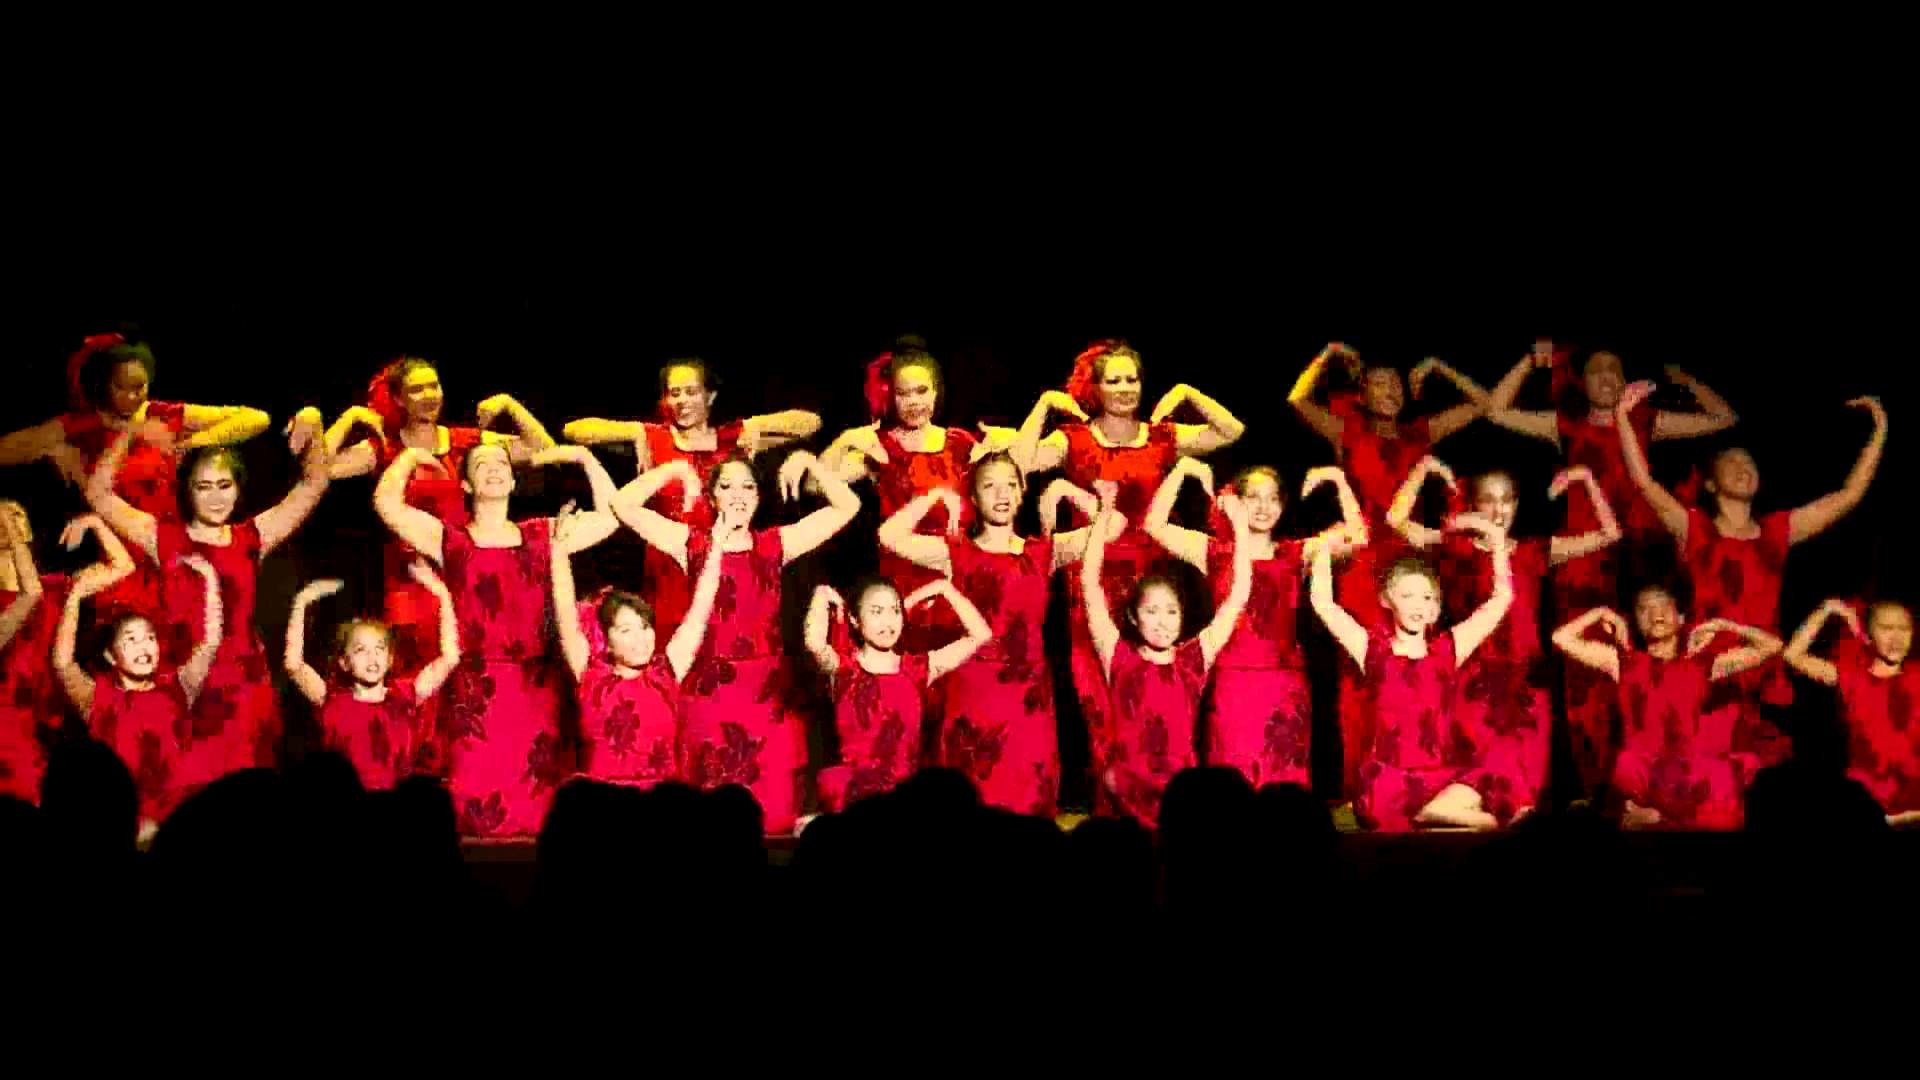 1920x1080 POLYNESIAN DANCE - HULA, TAHITIAN, SAMOAN, MAORI - HEILANI